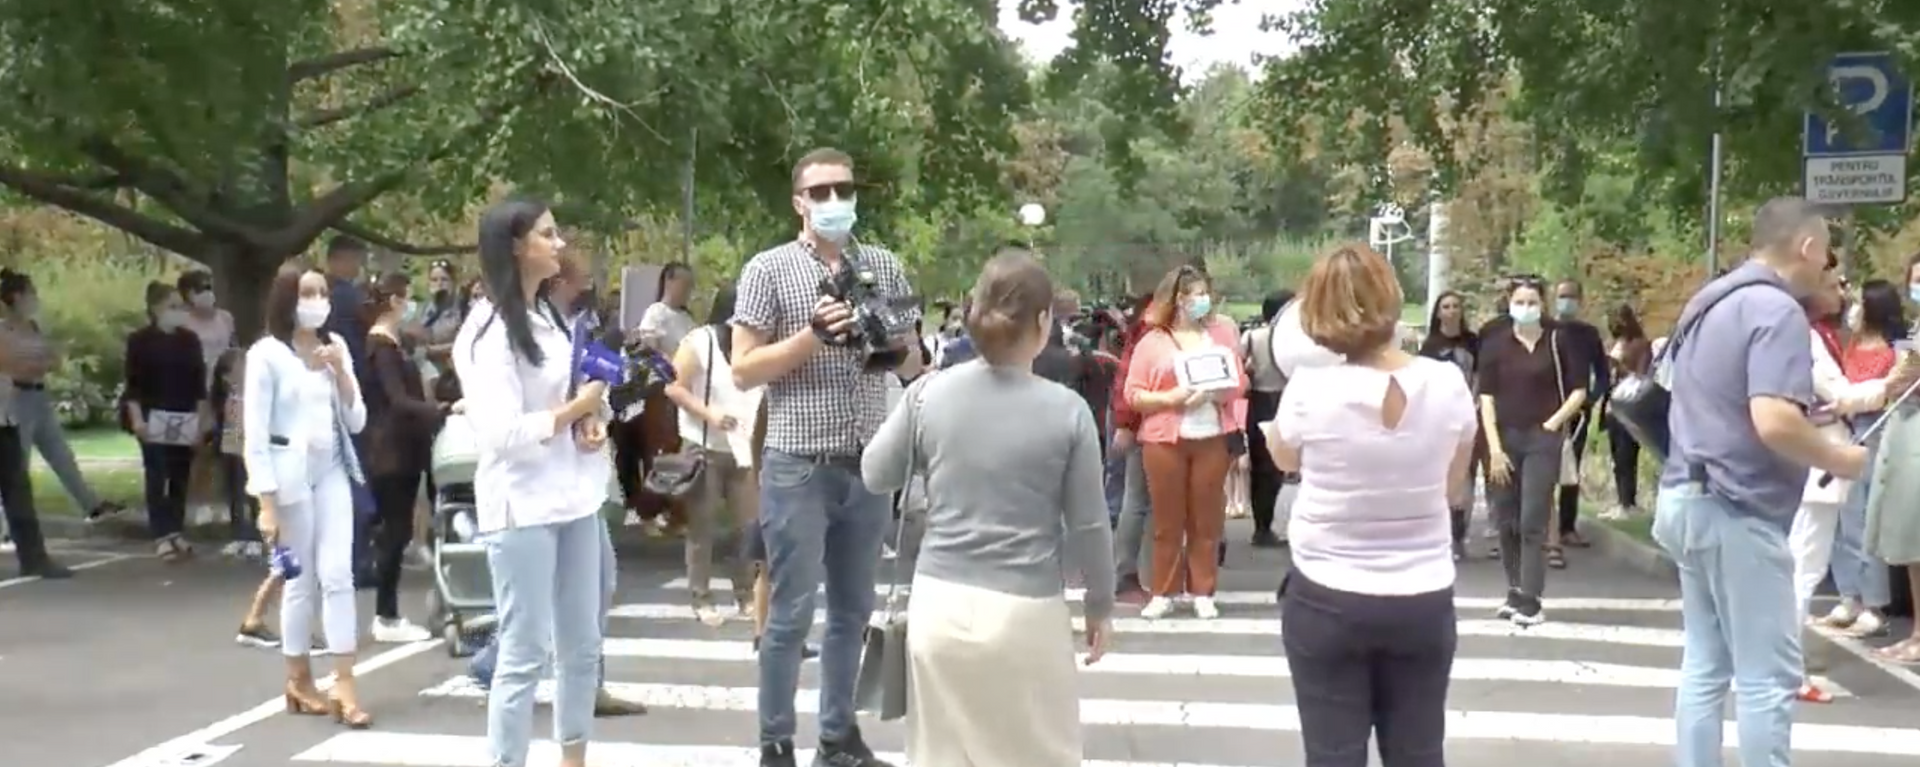 Părinții au ieșit la protest în fața Guvernului: Ce îi nemulțumește - Sputnik Moldova, 1920, 01.09.2021